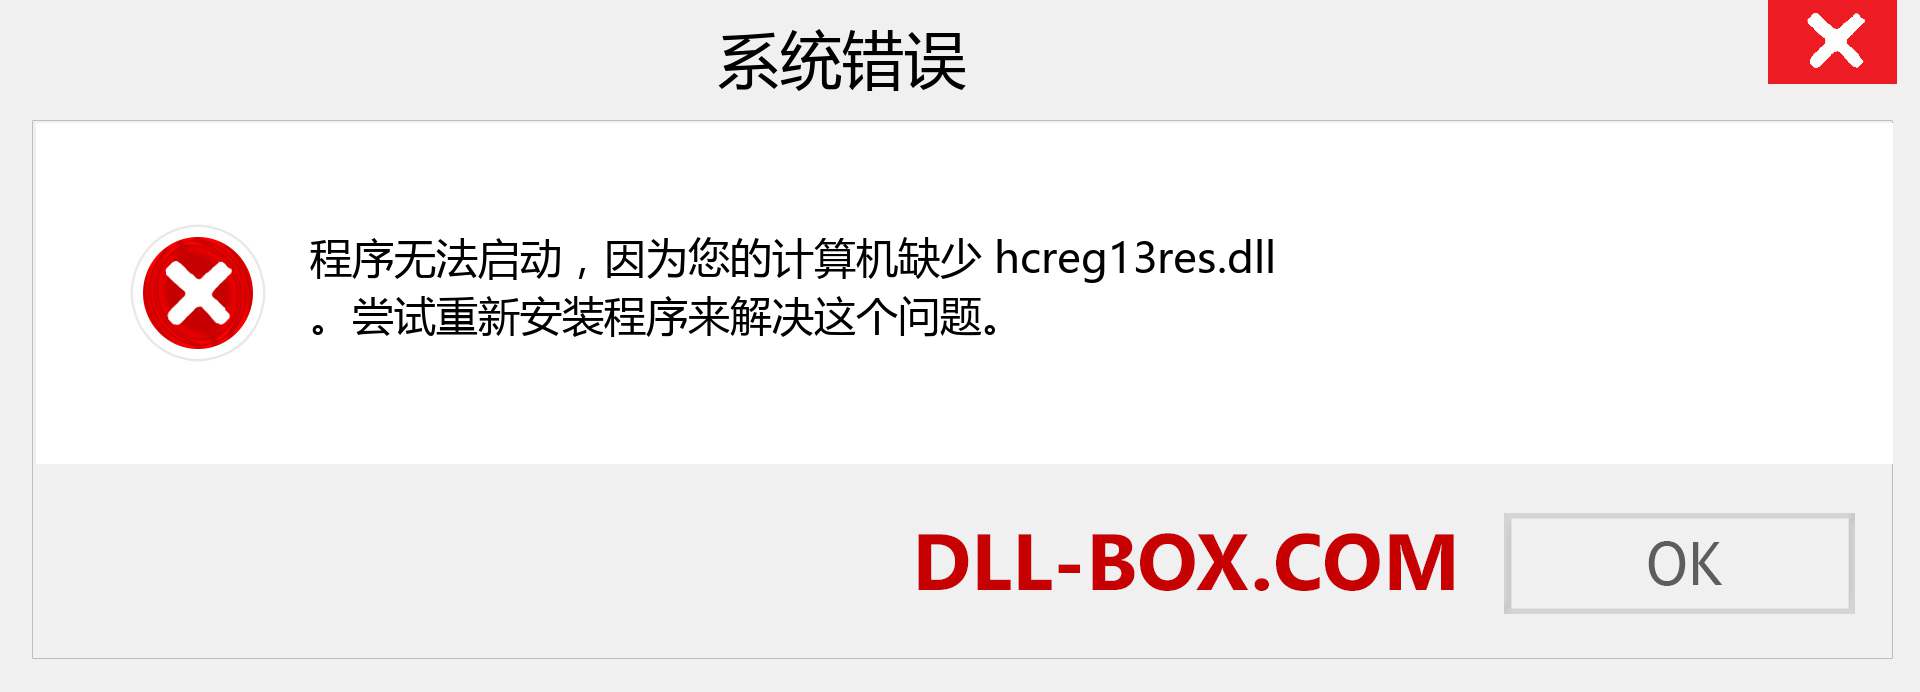 hcreg13res.dll 文件丢失？。 适用于 Windows 7、8、10 的下载 - 修复 Windows、照片、图像上的 hcreg13res dll 丢失错误